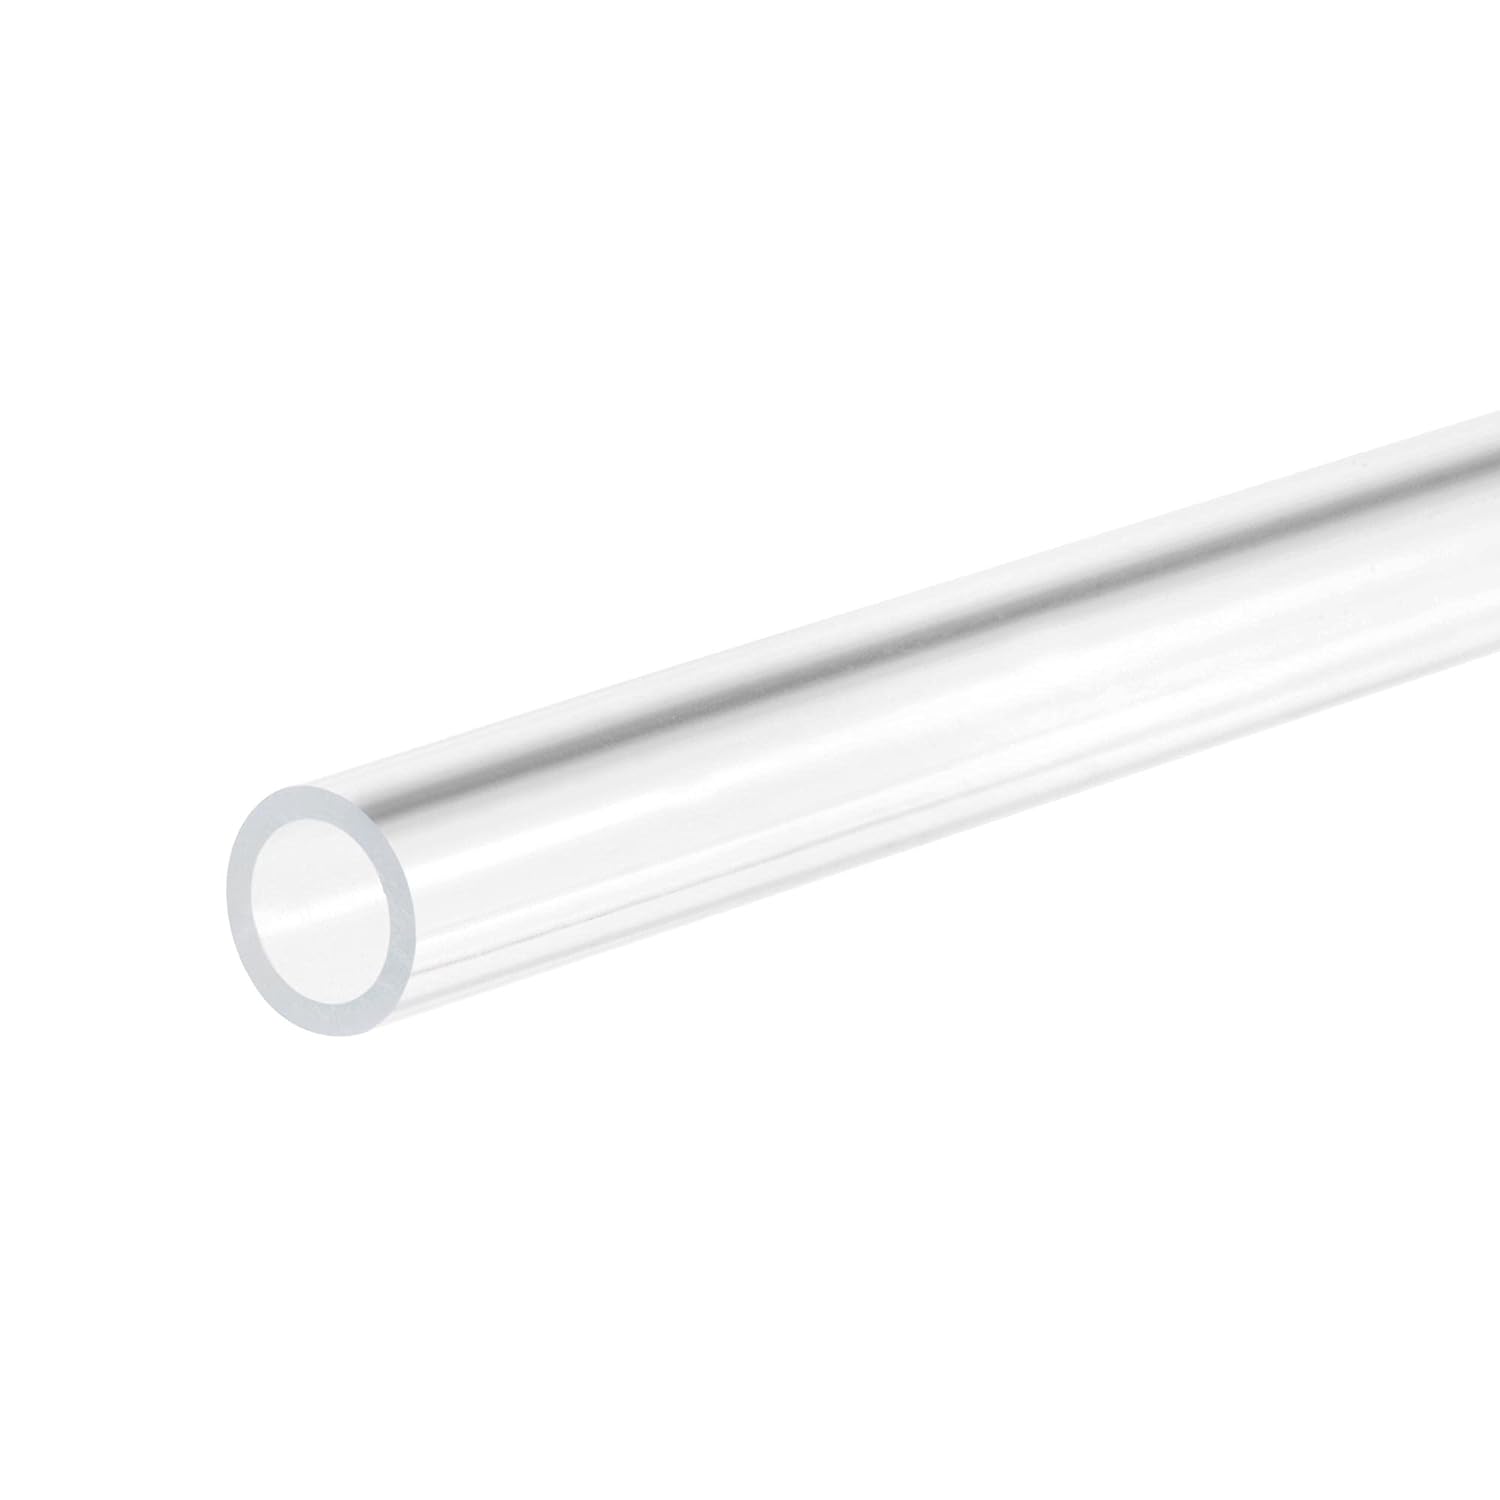 DVH Tube Acrylic rigide 3/5 mm longueur 49,5 cm pour pompe doseuse et autres usages